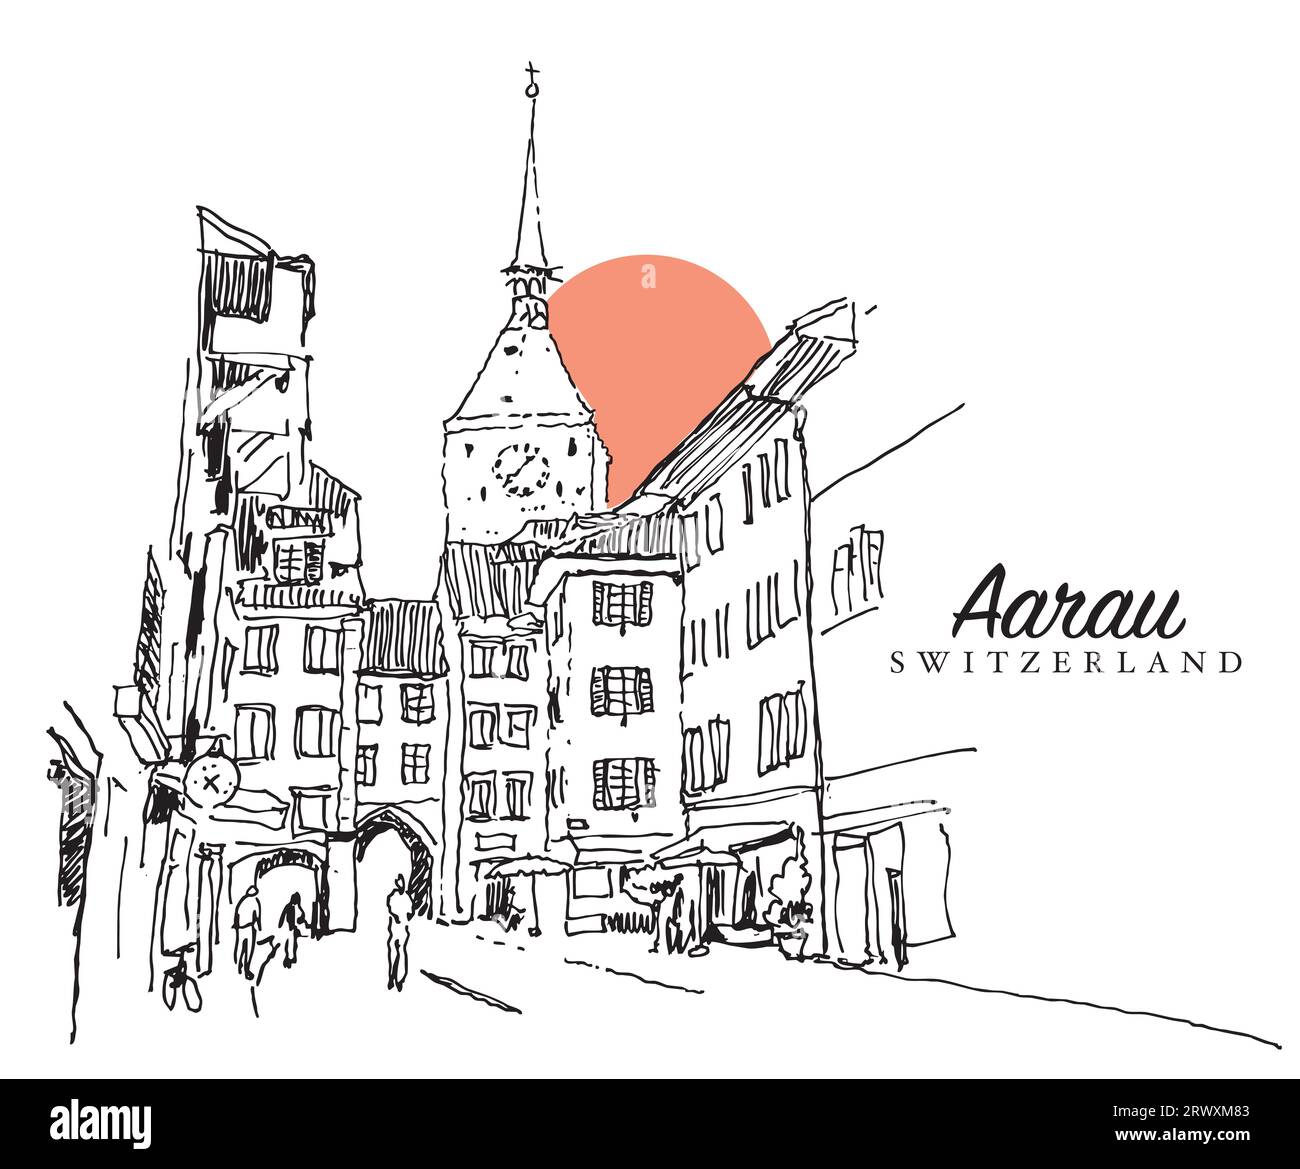 Disegno vettoriale disegnato a mano raffigurante una strada medievale nel cantone di Aarau in Svizzera. Foto Stock